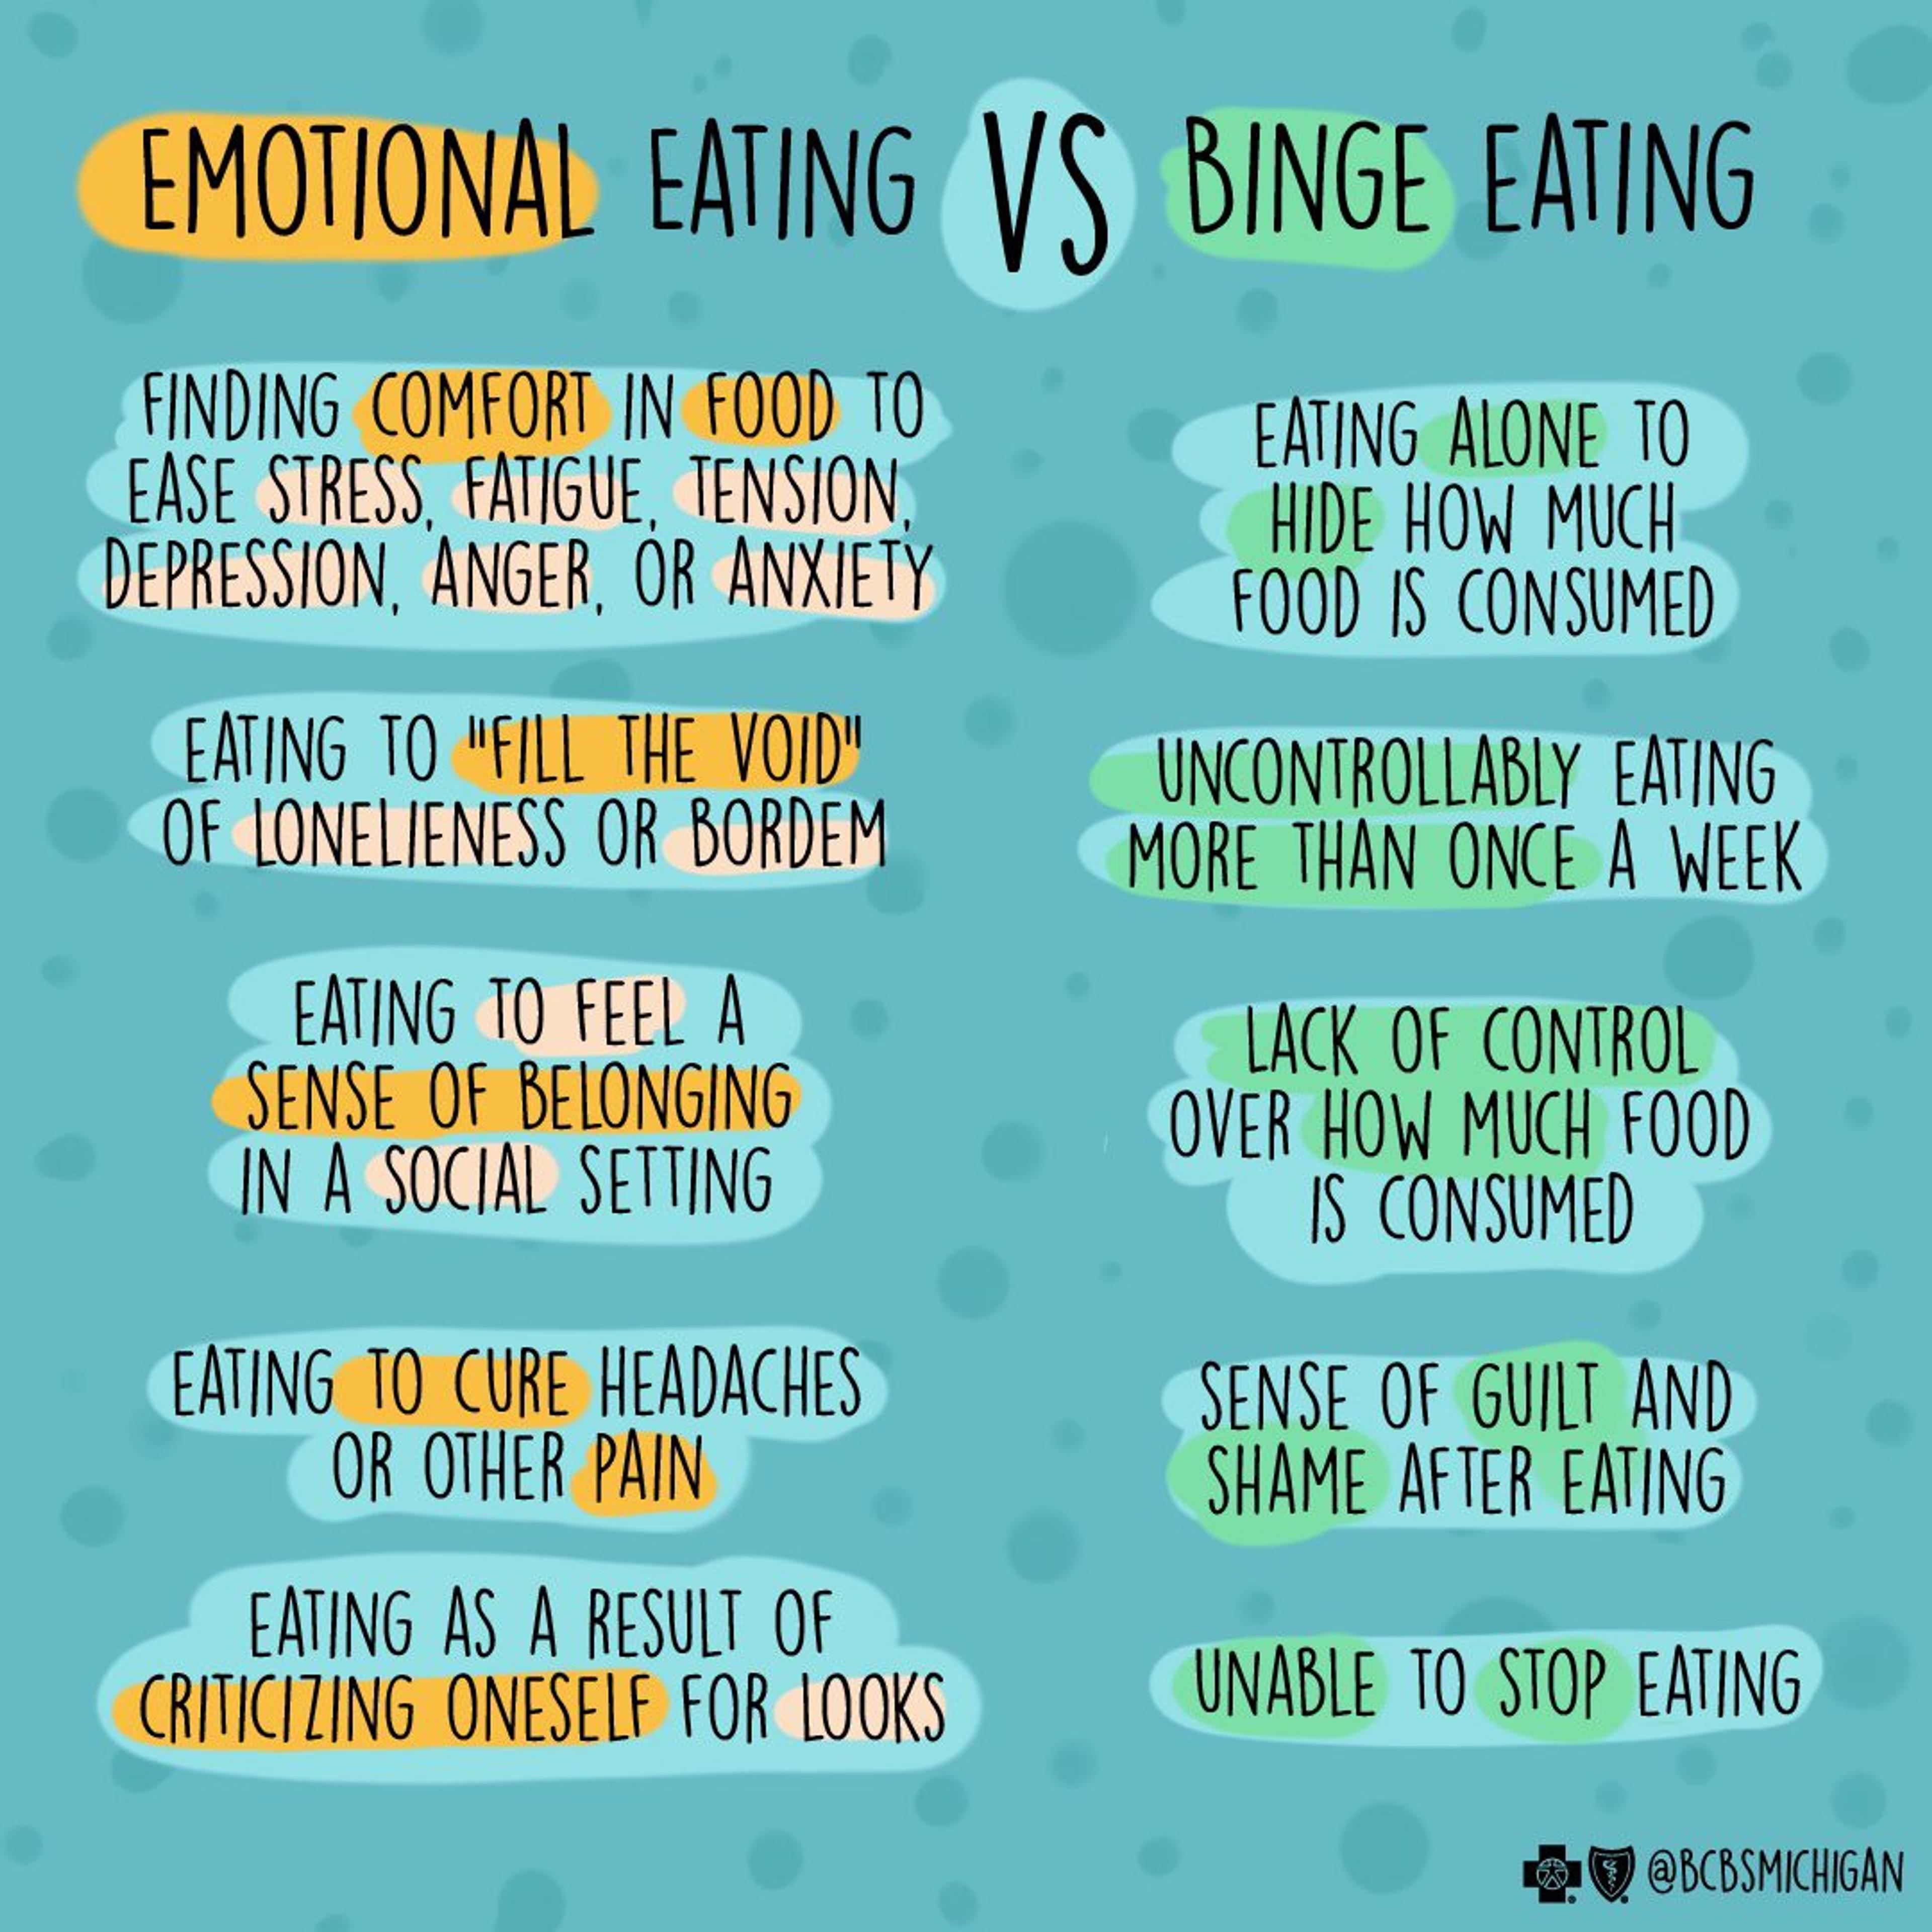 Graphic depiction of binge eating vs. emotional eating